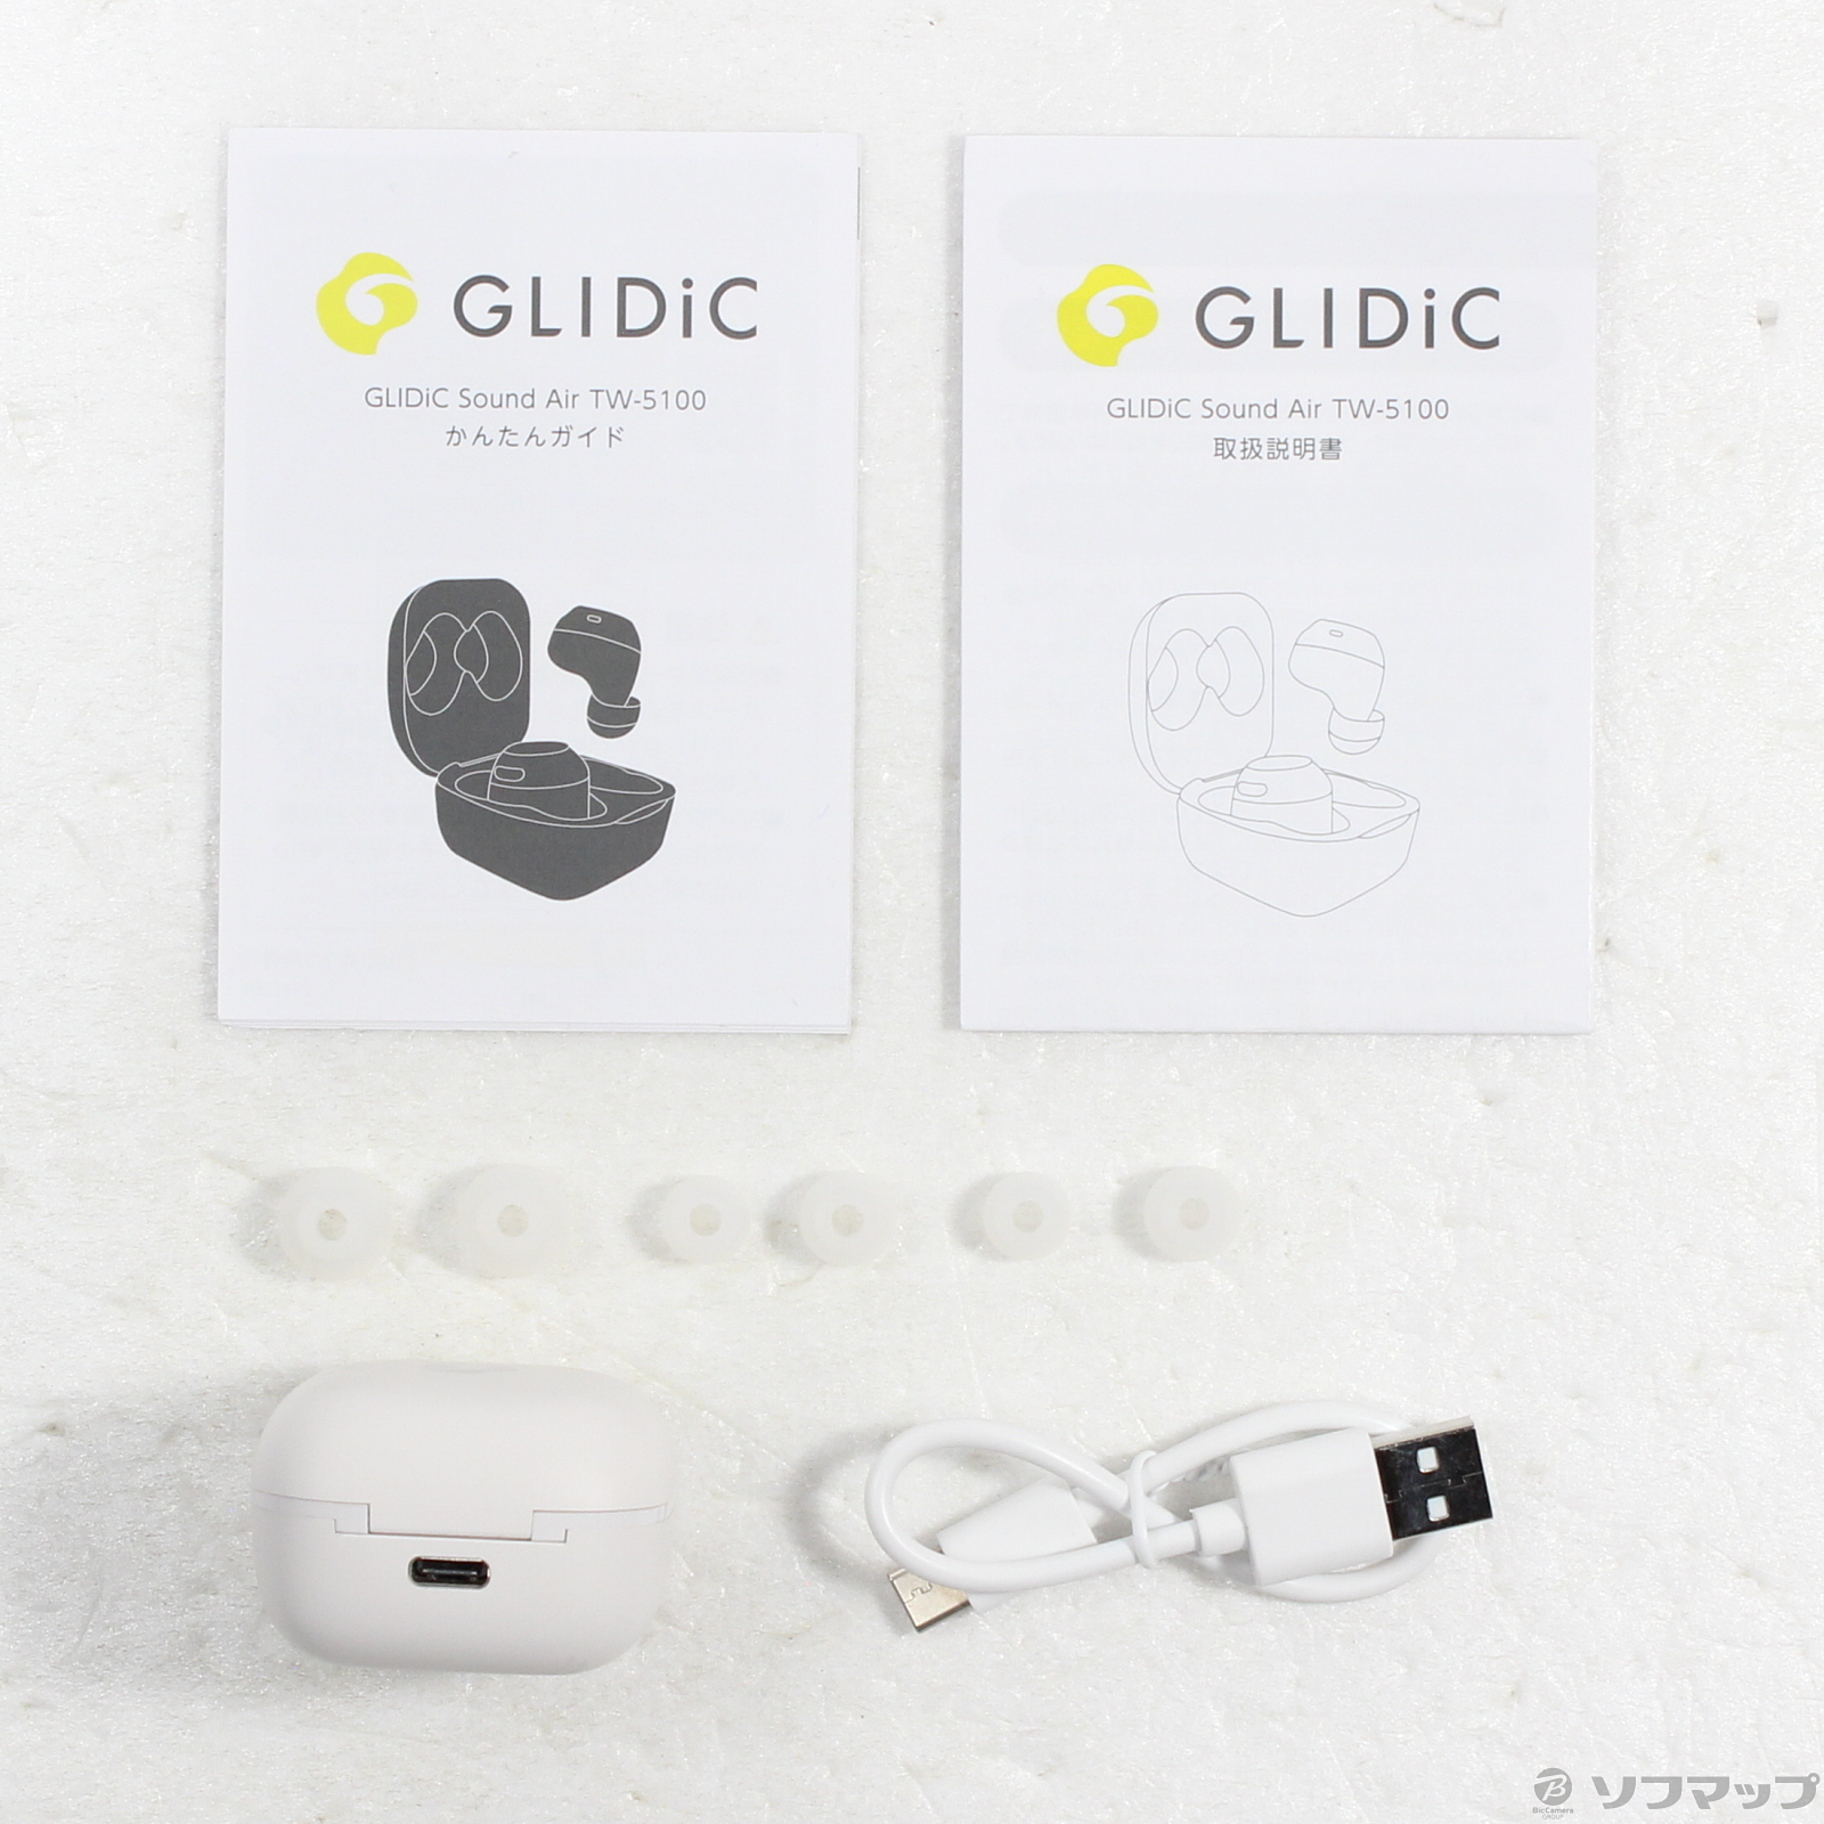 ソフトバンクシリーズ名GLIDiC TW-9000やGLIDiC Sound Air TW-5100